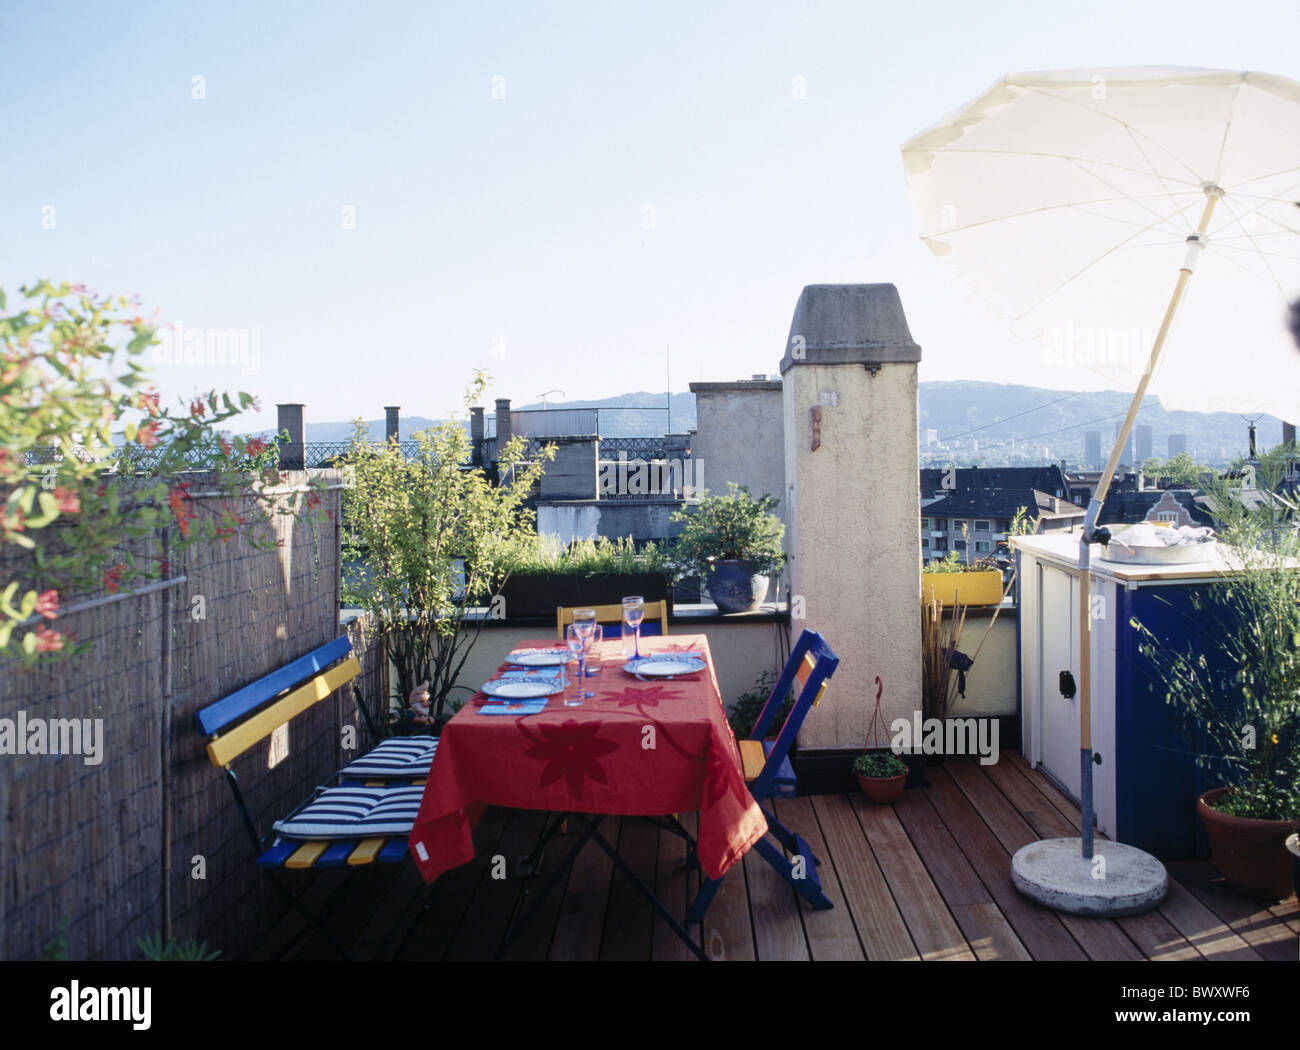 Leben Dach überdeckte Terrasse Haus Hause Holzboden Pflanzen Sonnenschirm Terrasse Tisch Schreibtisch Tischdecke Merlon Stockfoto